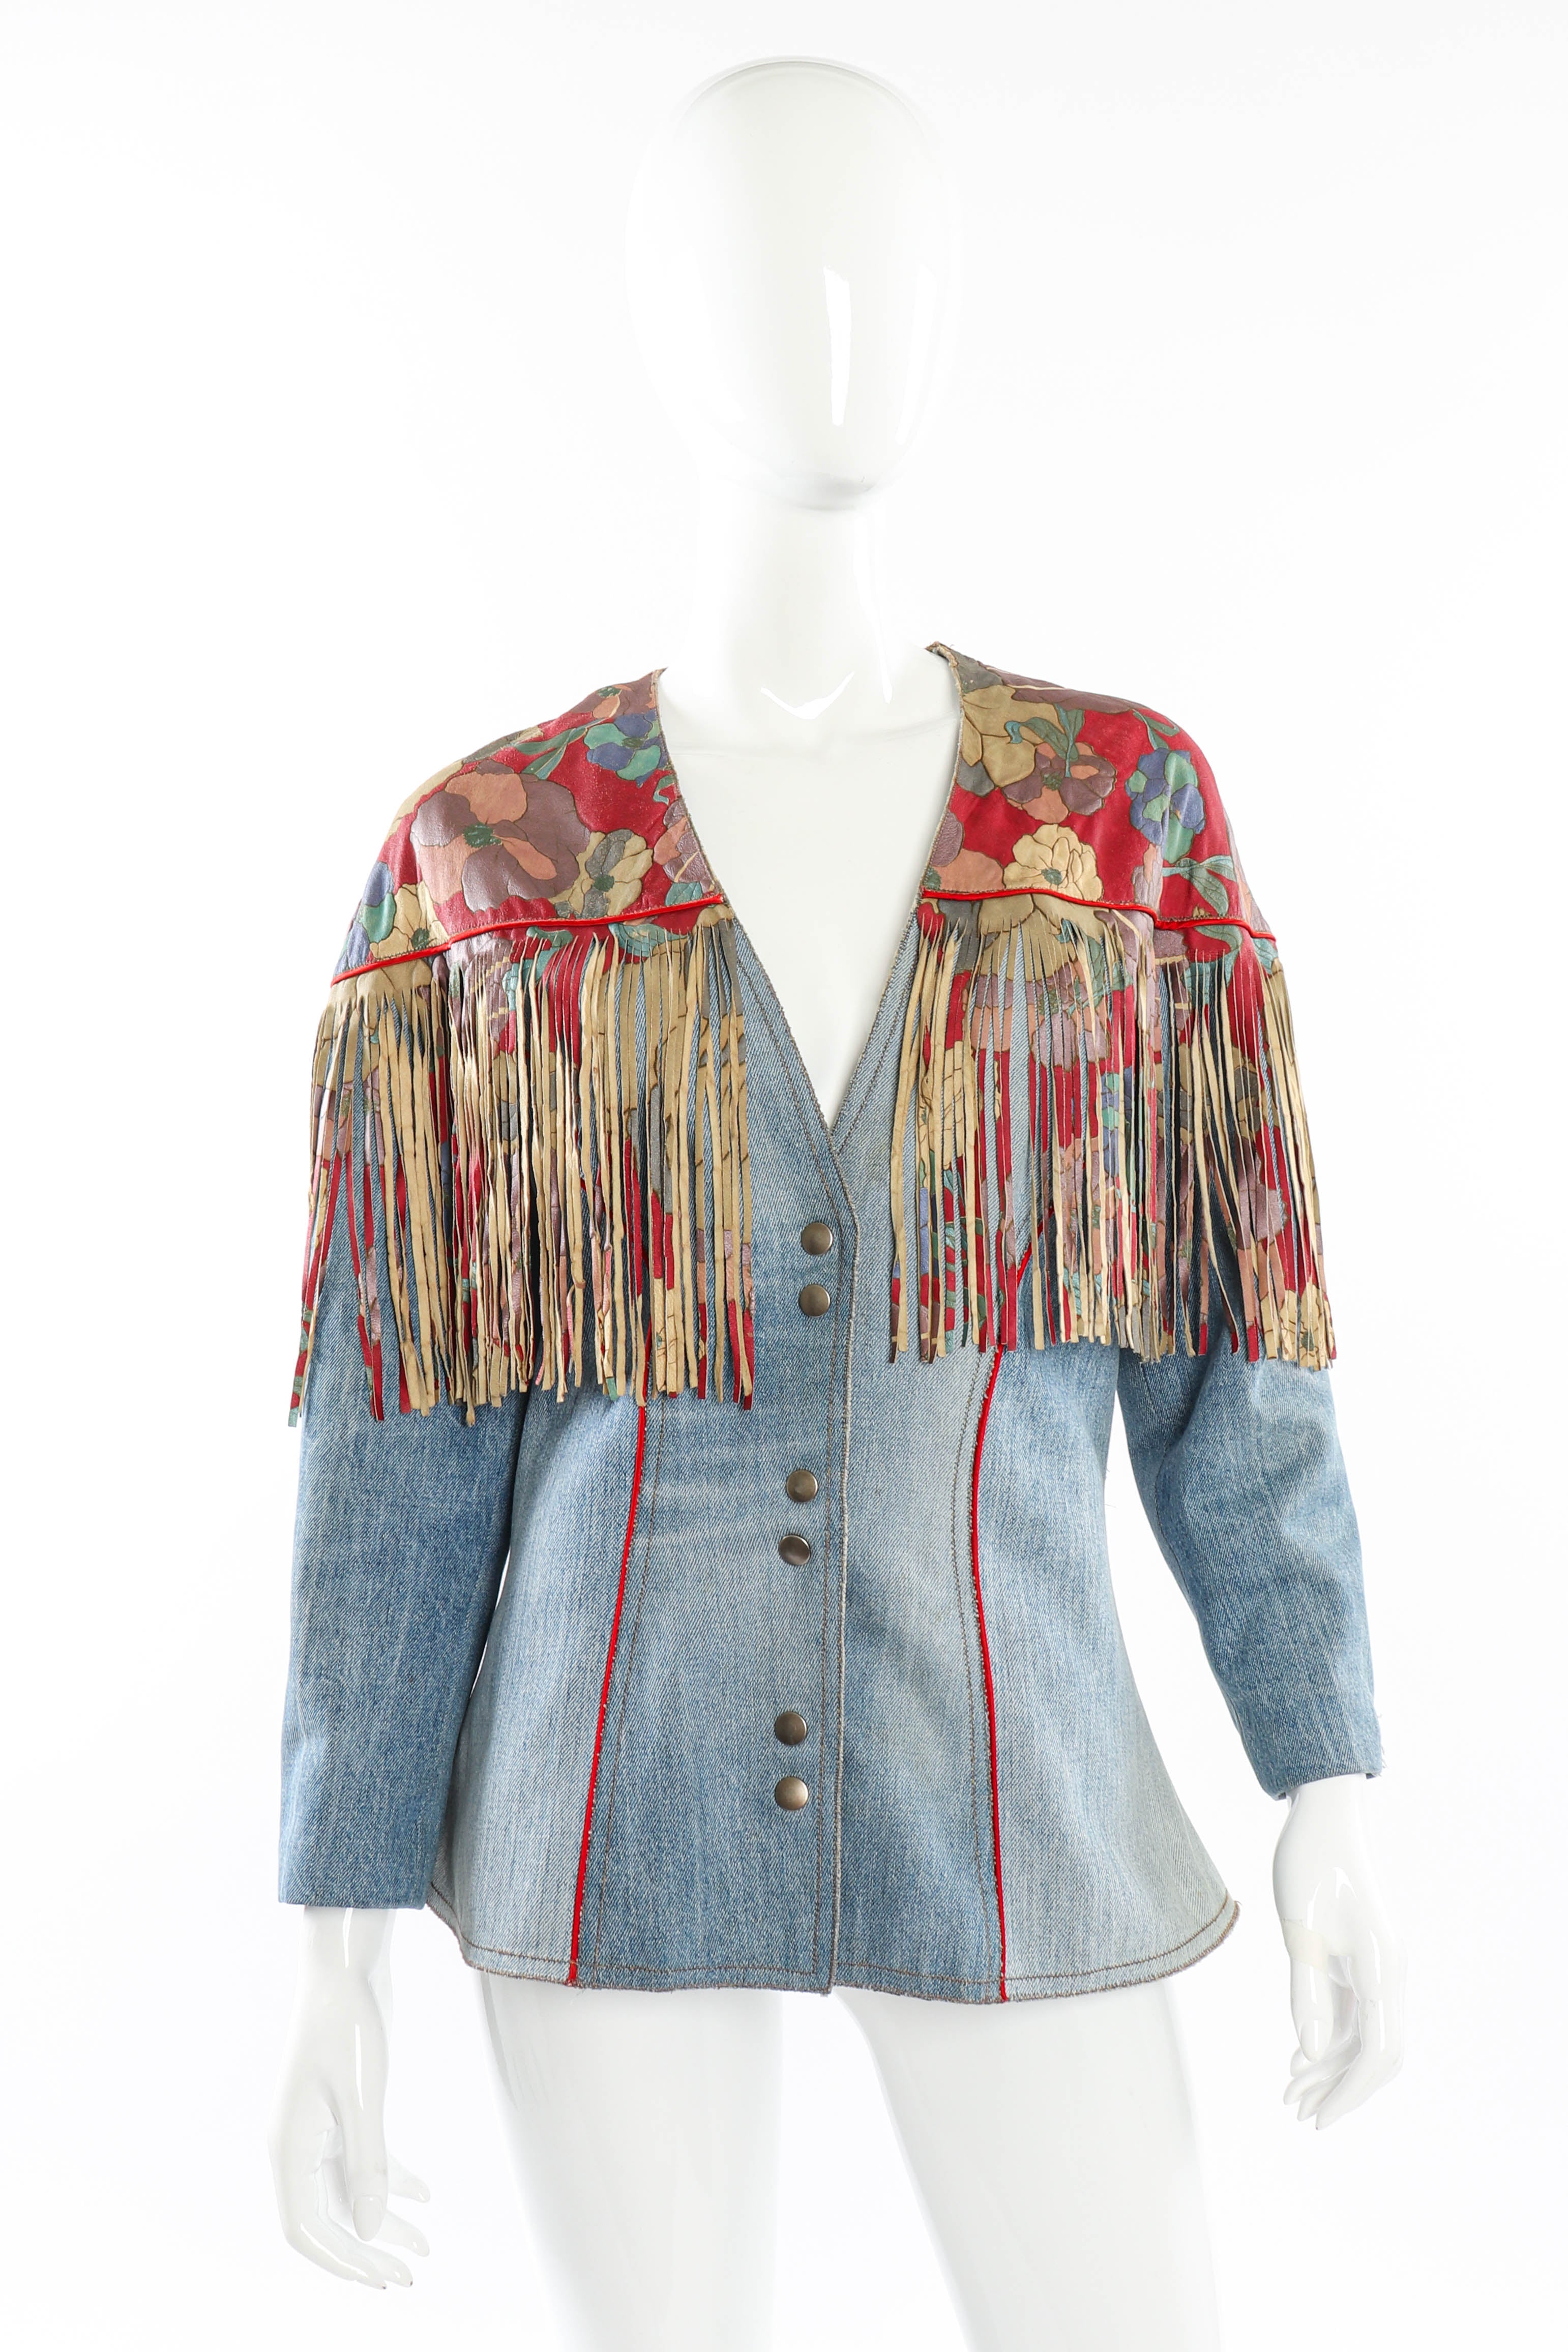 Vintage Roberto Cavalli Floral Denim and Leather Fringe Jacket front on mannequin @recessla